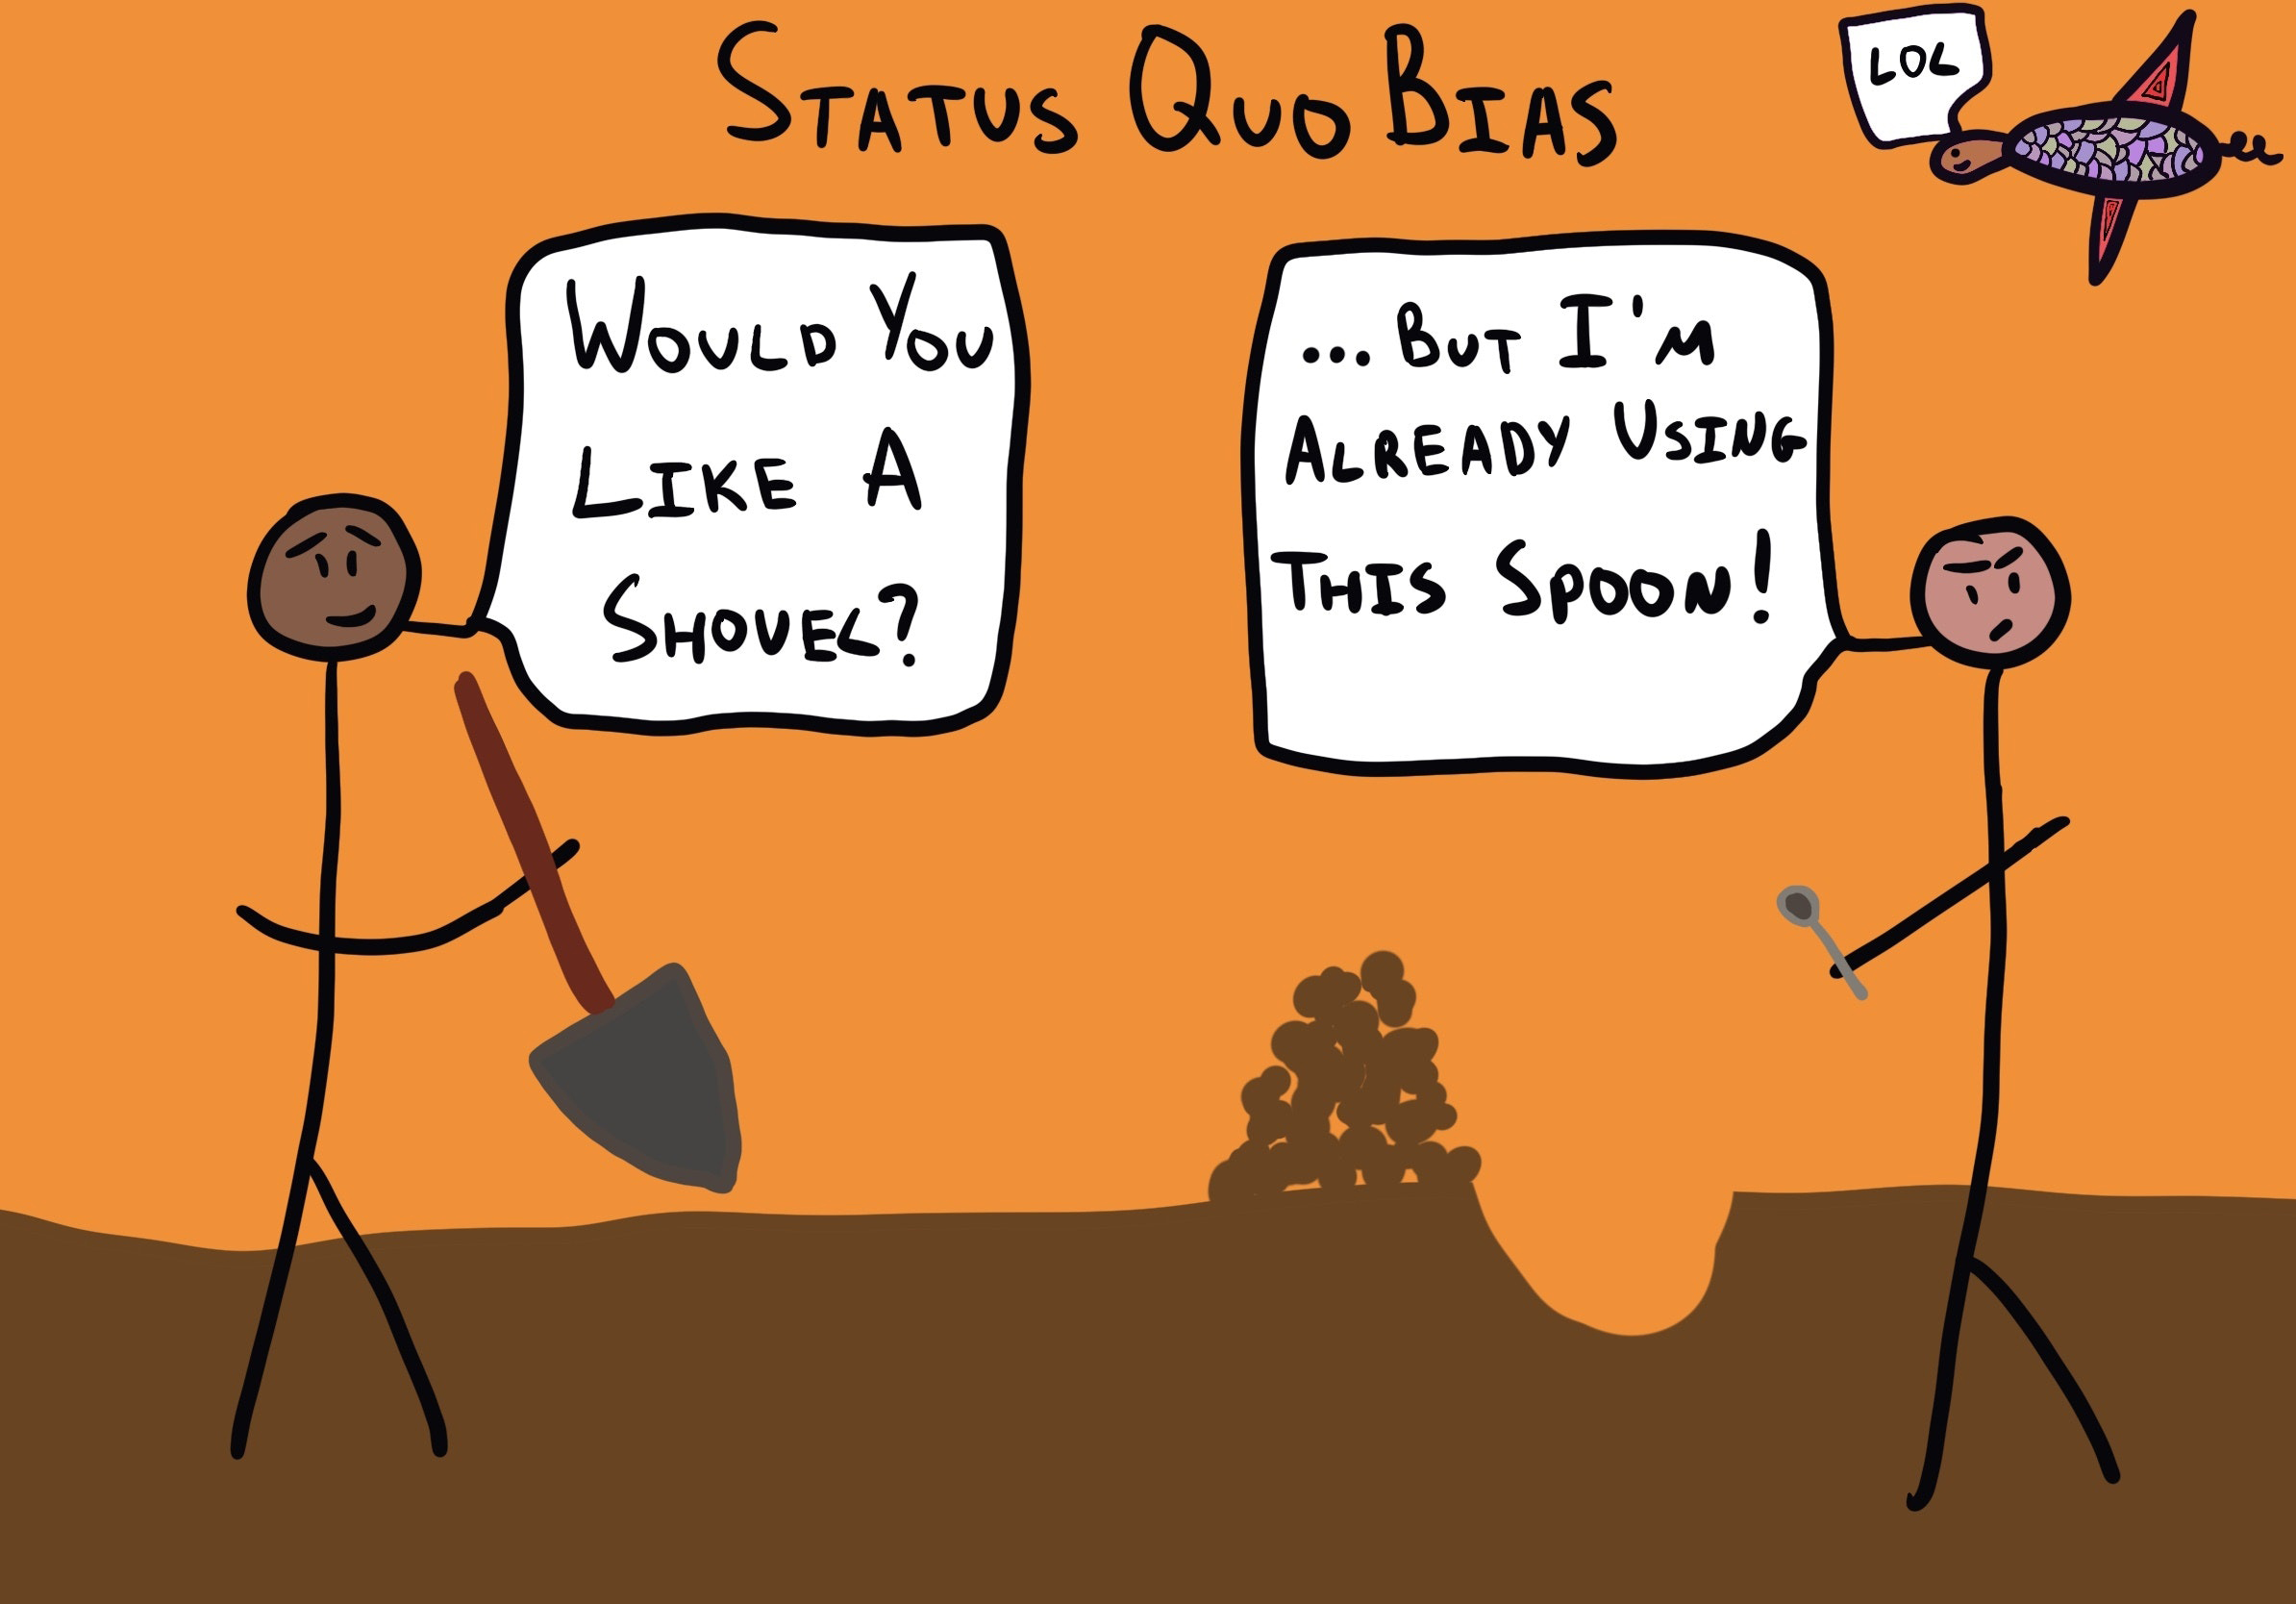 Status Quo Bias illustrations